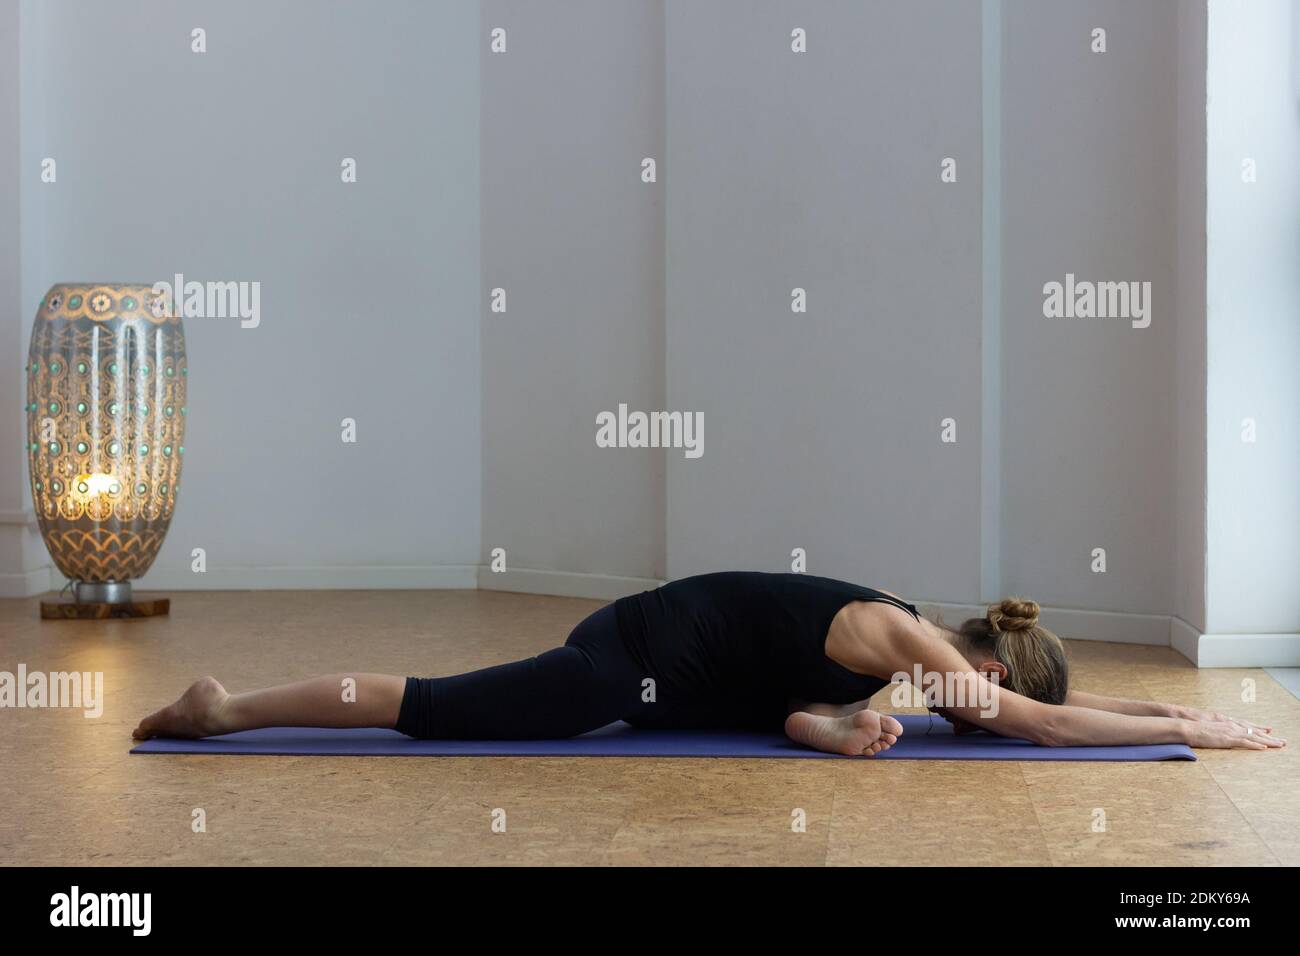 Femme flexible allongé sur une posture de pigeon au studio de yoga. La femme yogi sur la tenue noire exécute le cygne endormi avec une jambe tendue et les bras vers l'avant Banque D'Images